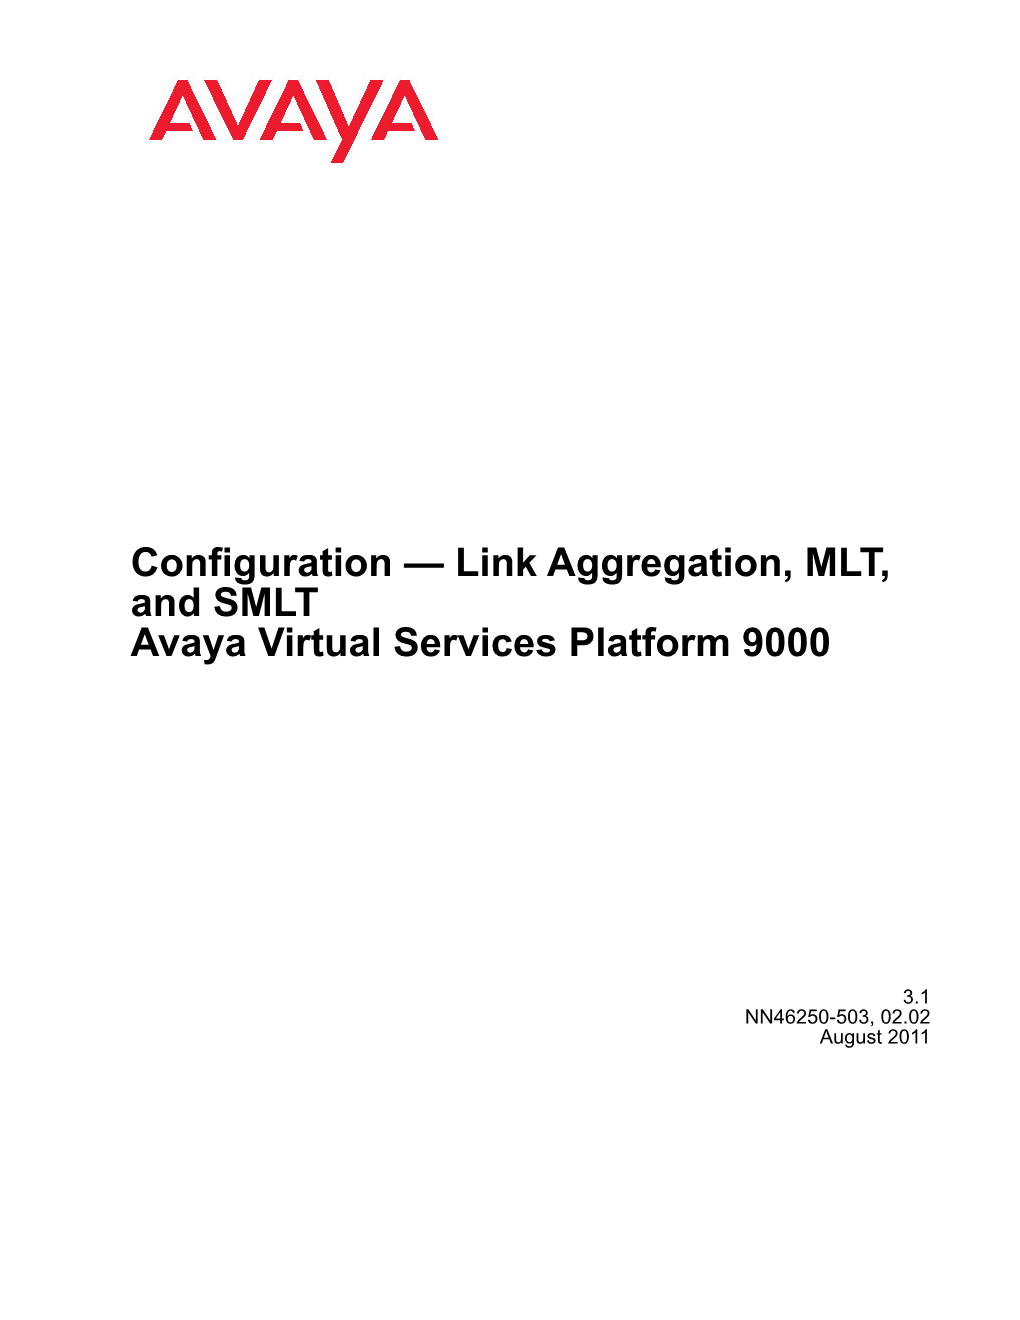 Link Aggregation, MLT, and SMLT Avaya Virtual Services Platform 9000